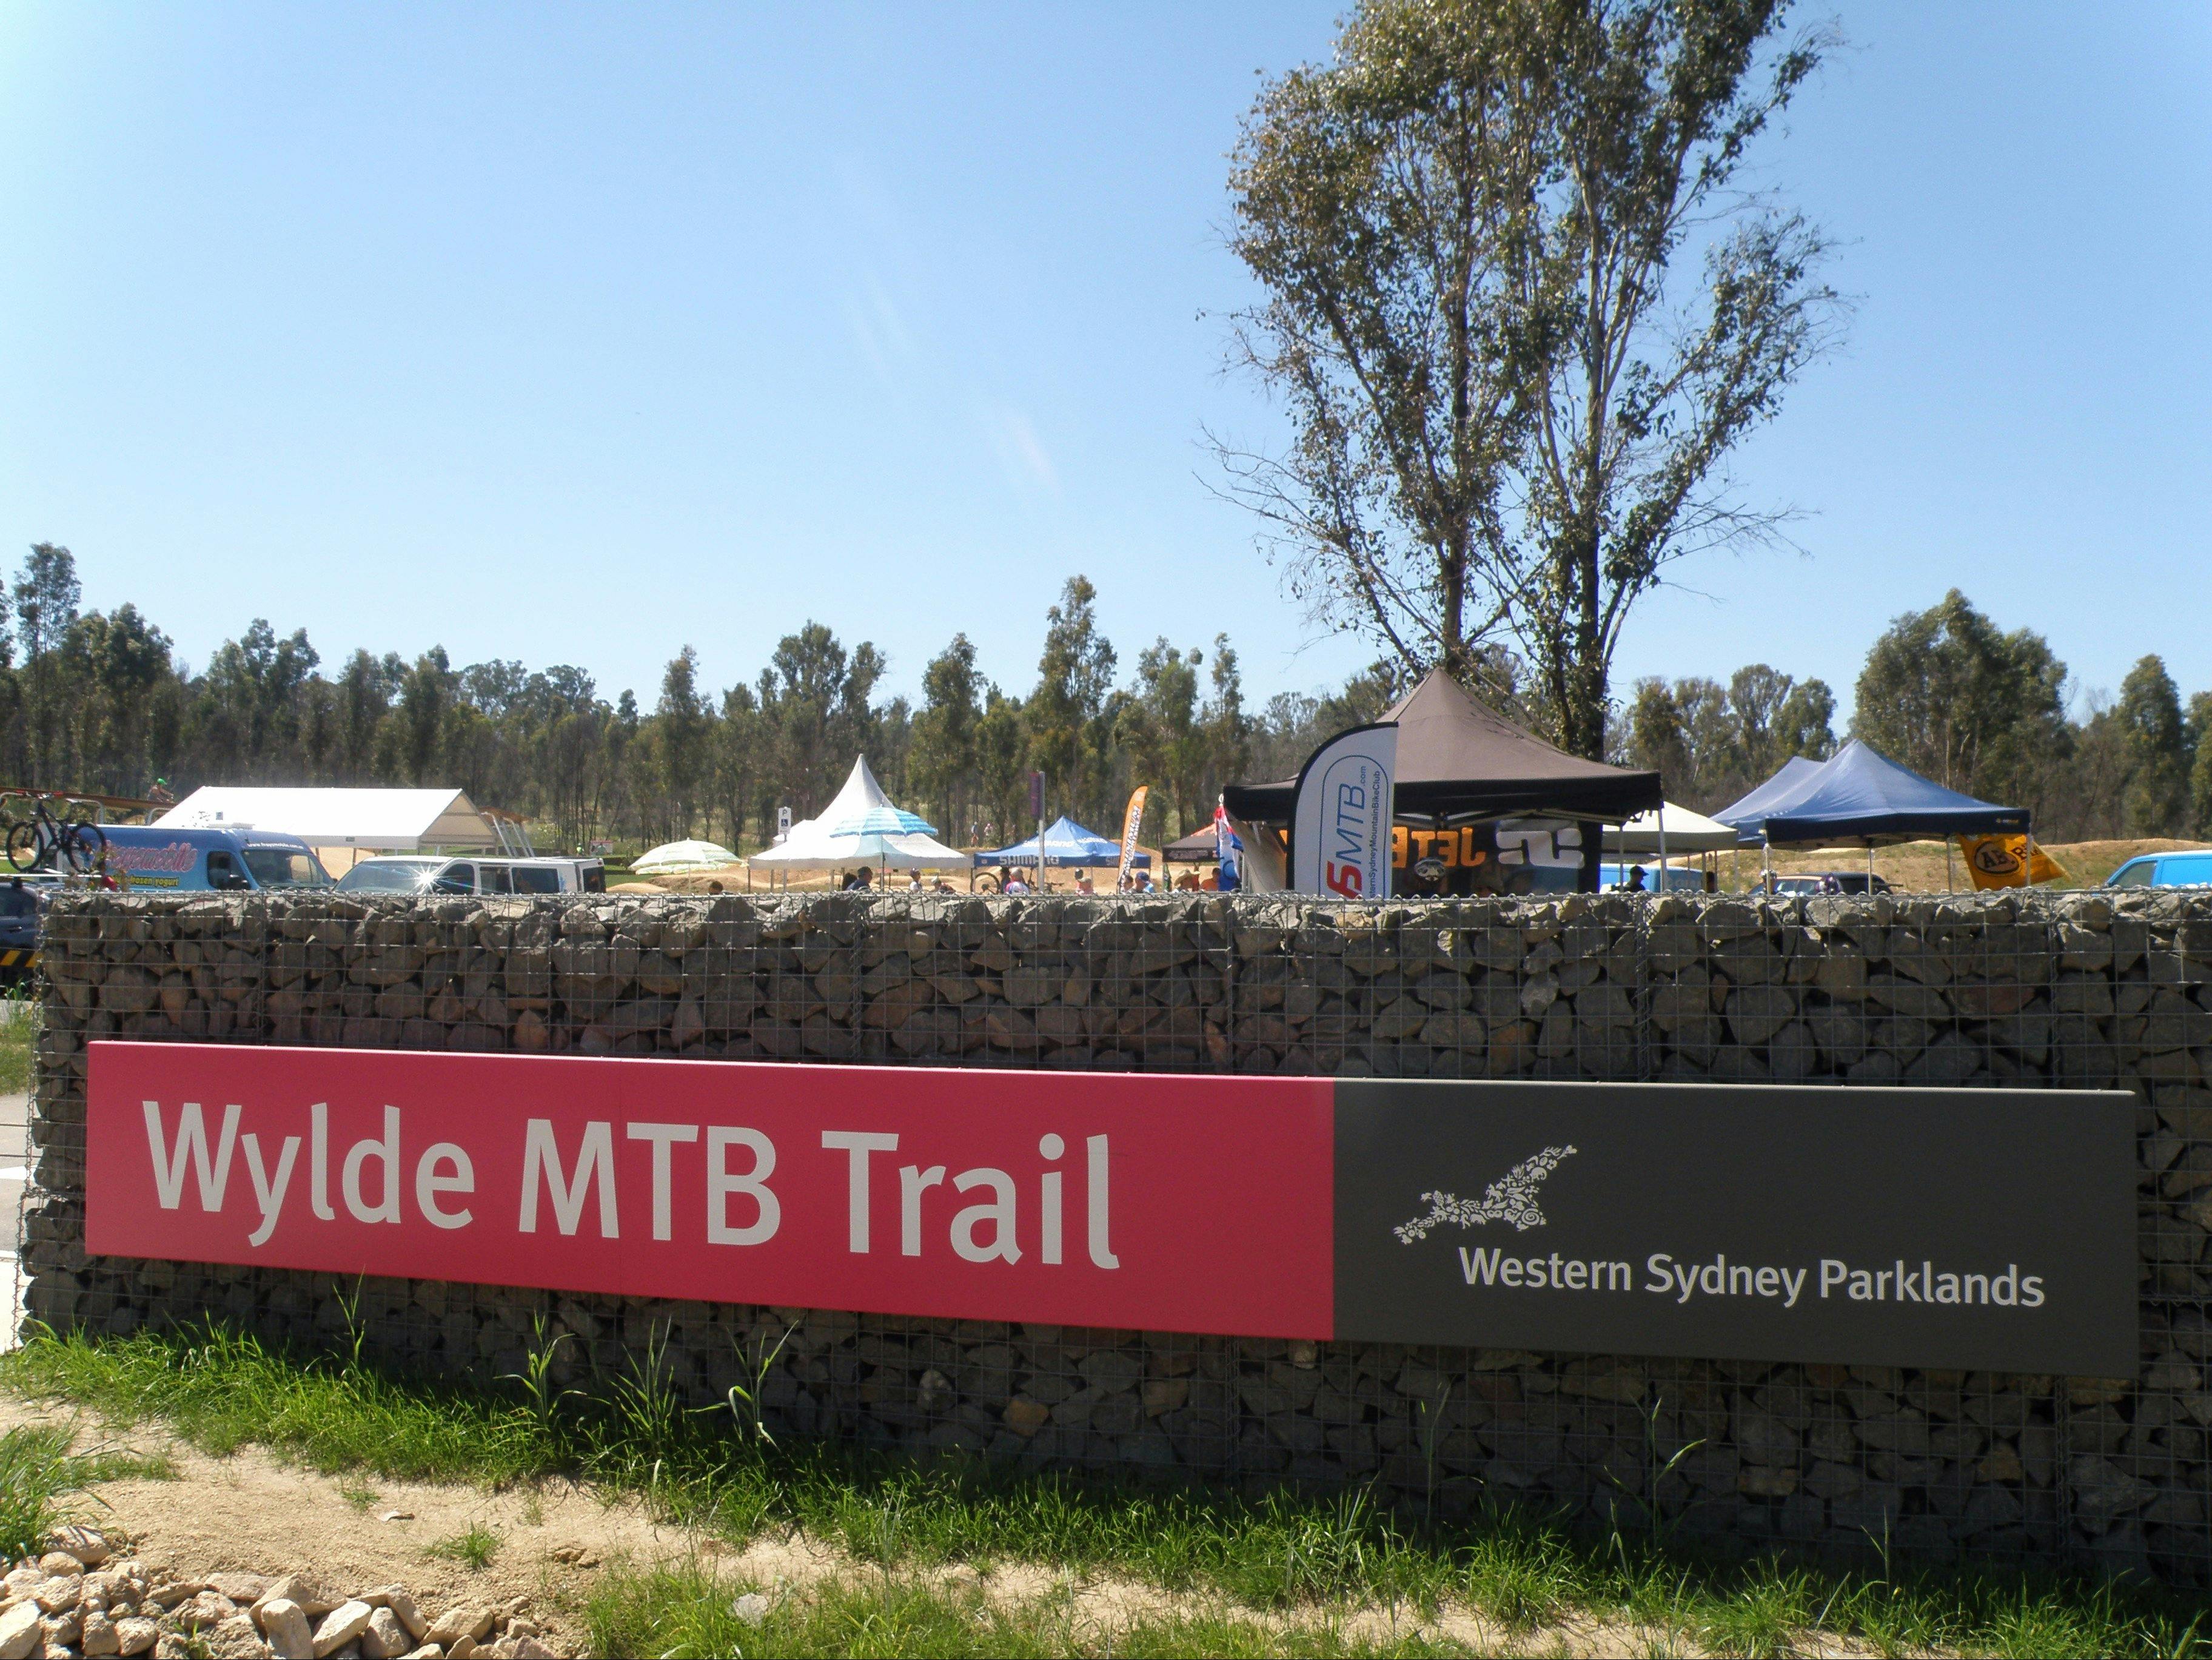 Wylde MTB Trail - Western Sydney Parklands